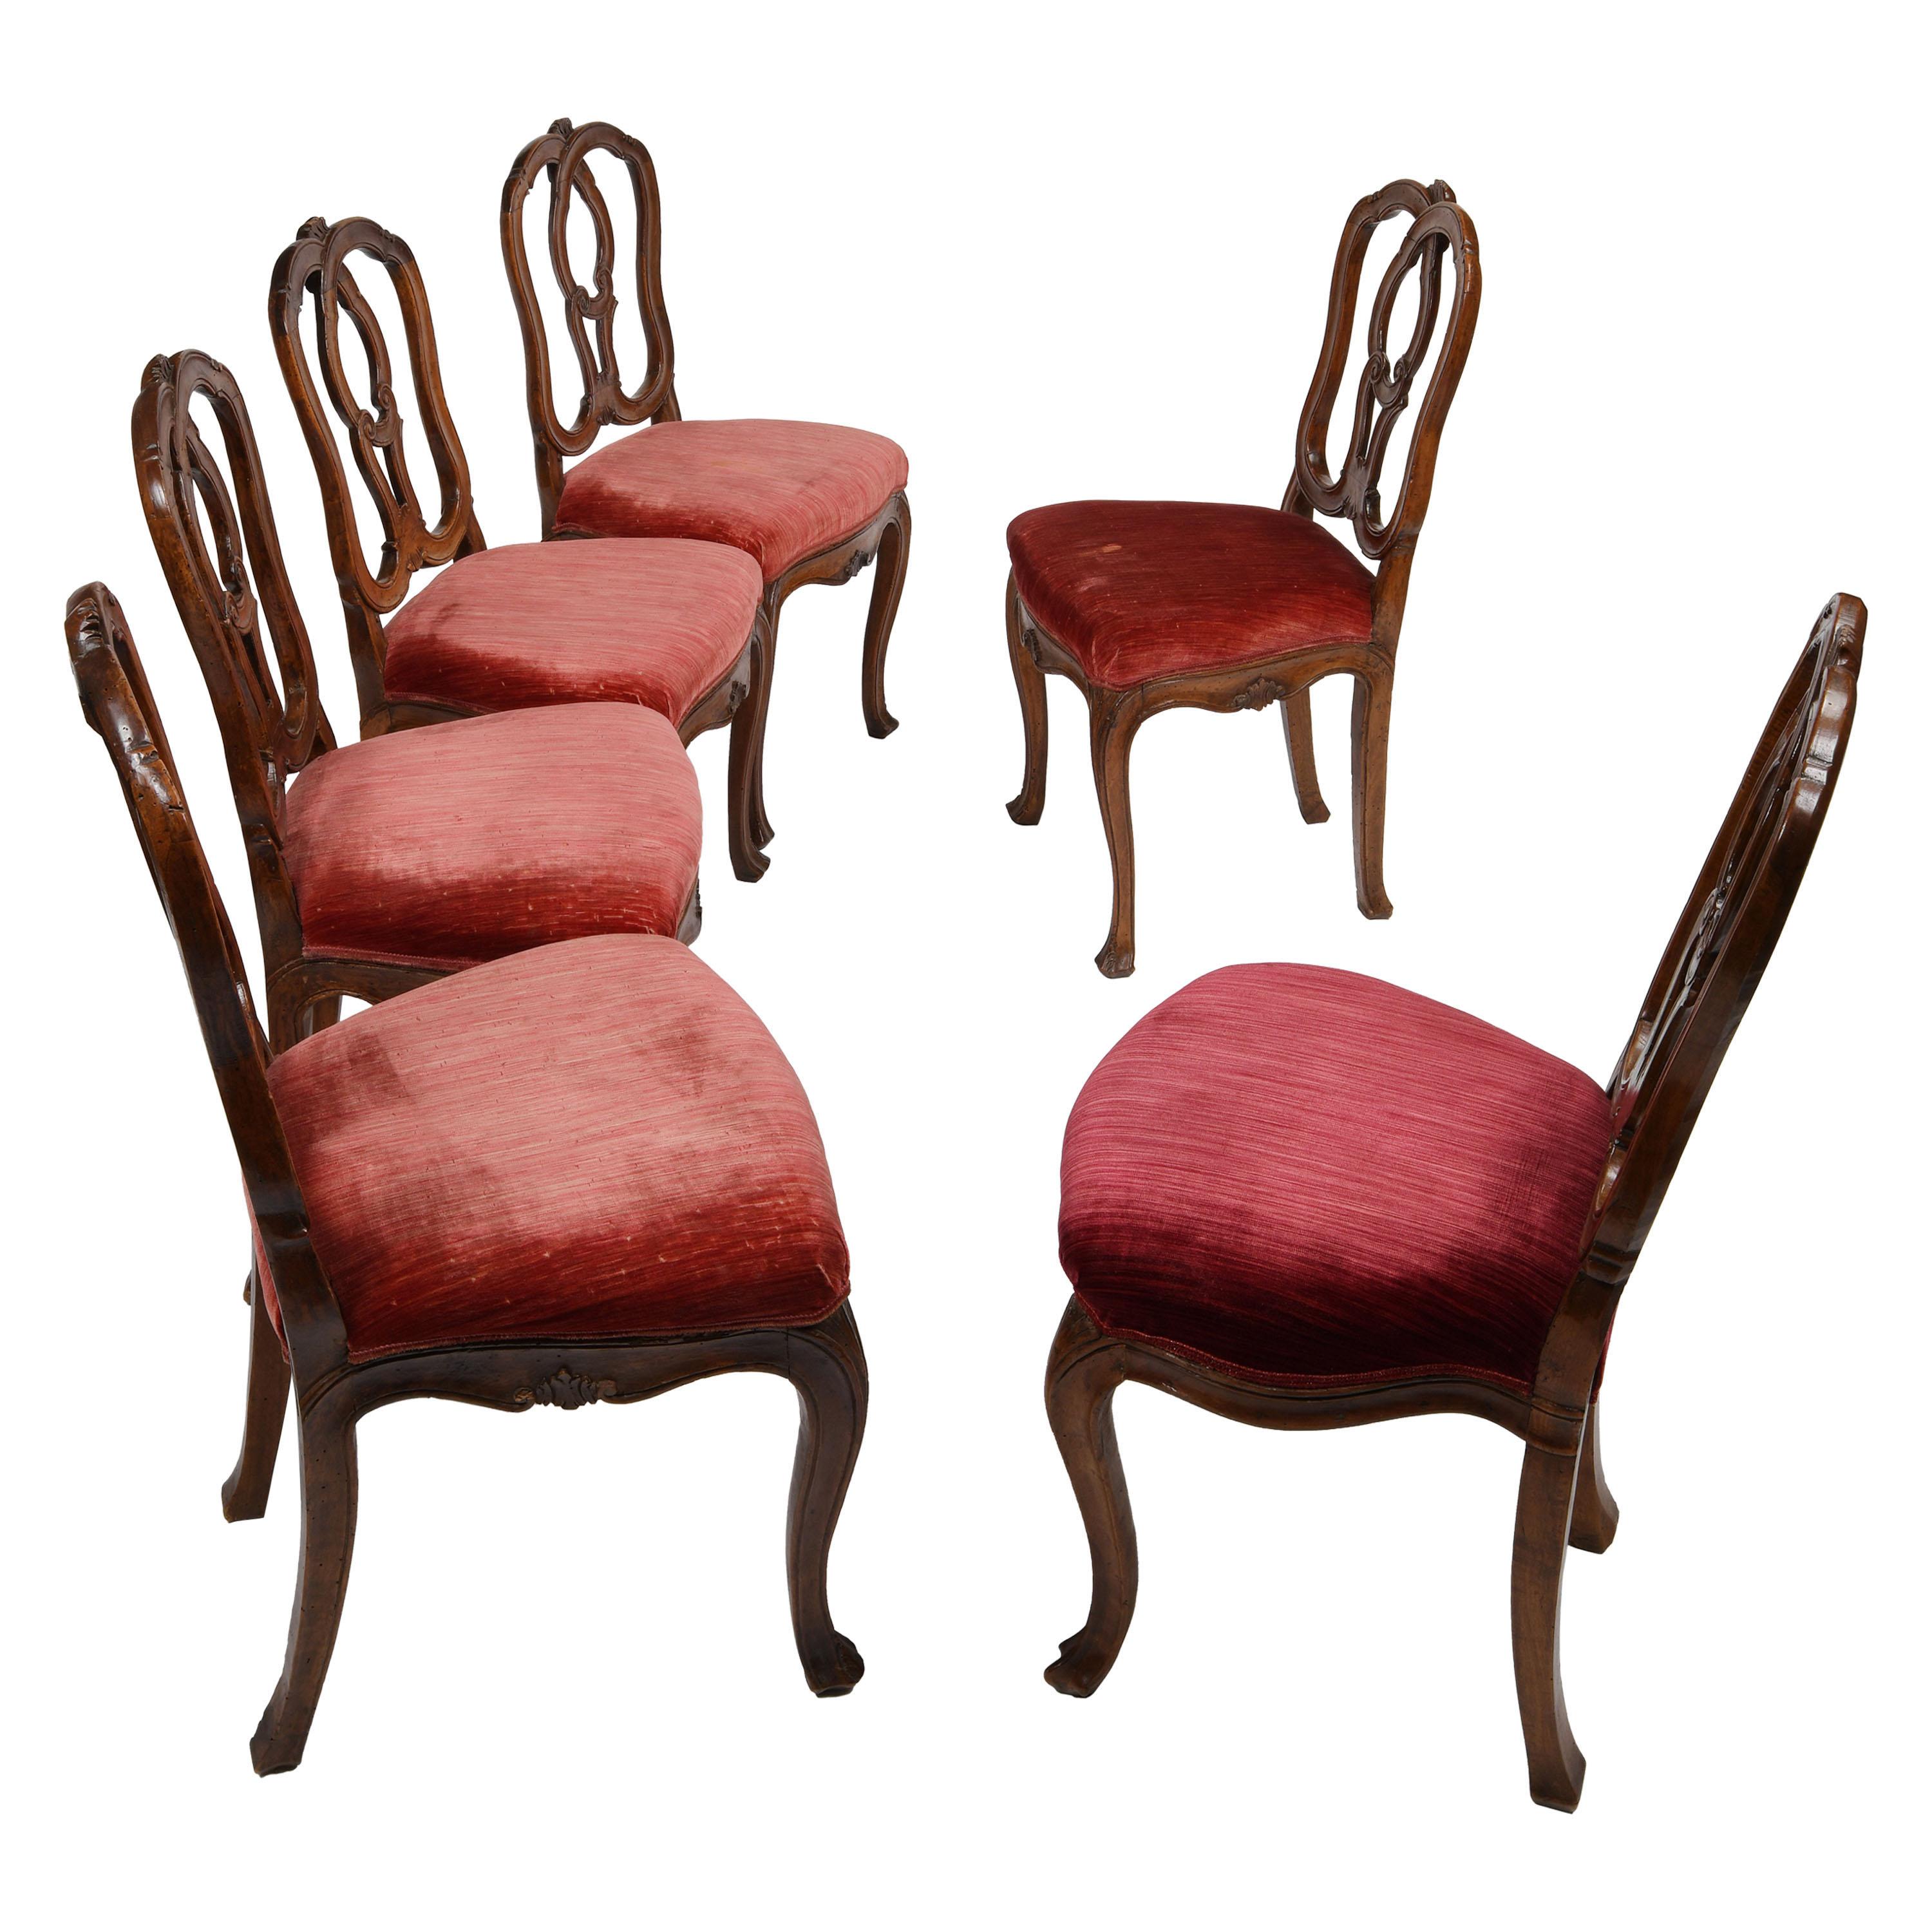 Sechs italienische Stühle aus der Mitte des 18. Jahrhunderts, Venedig, um 1750